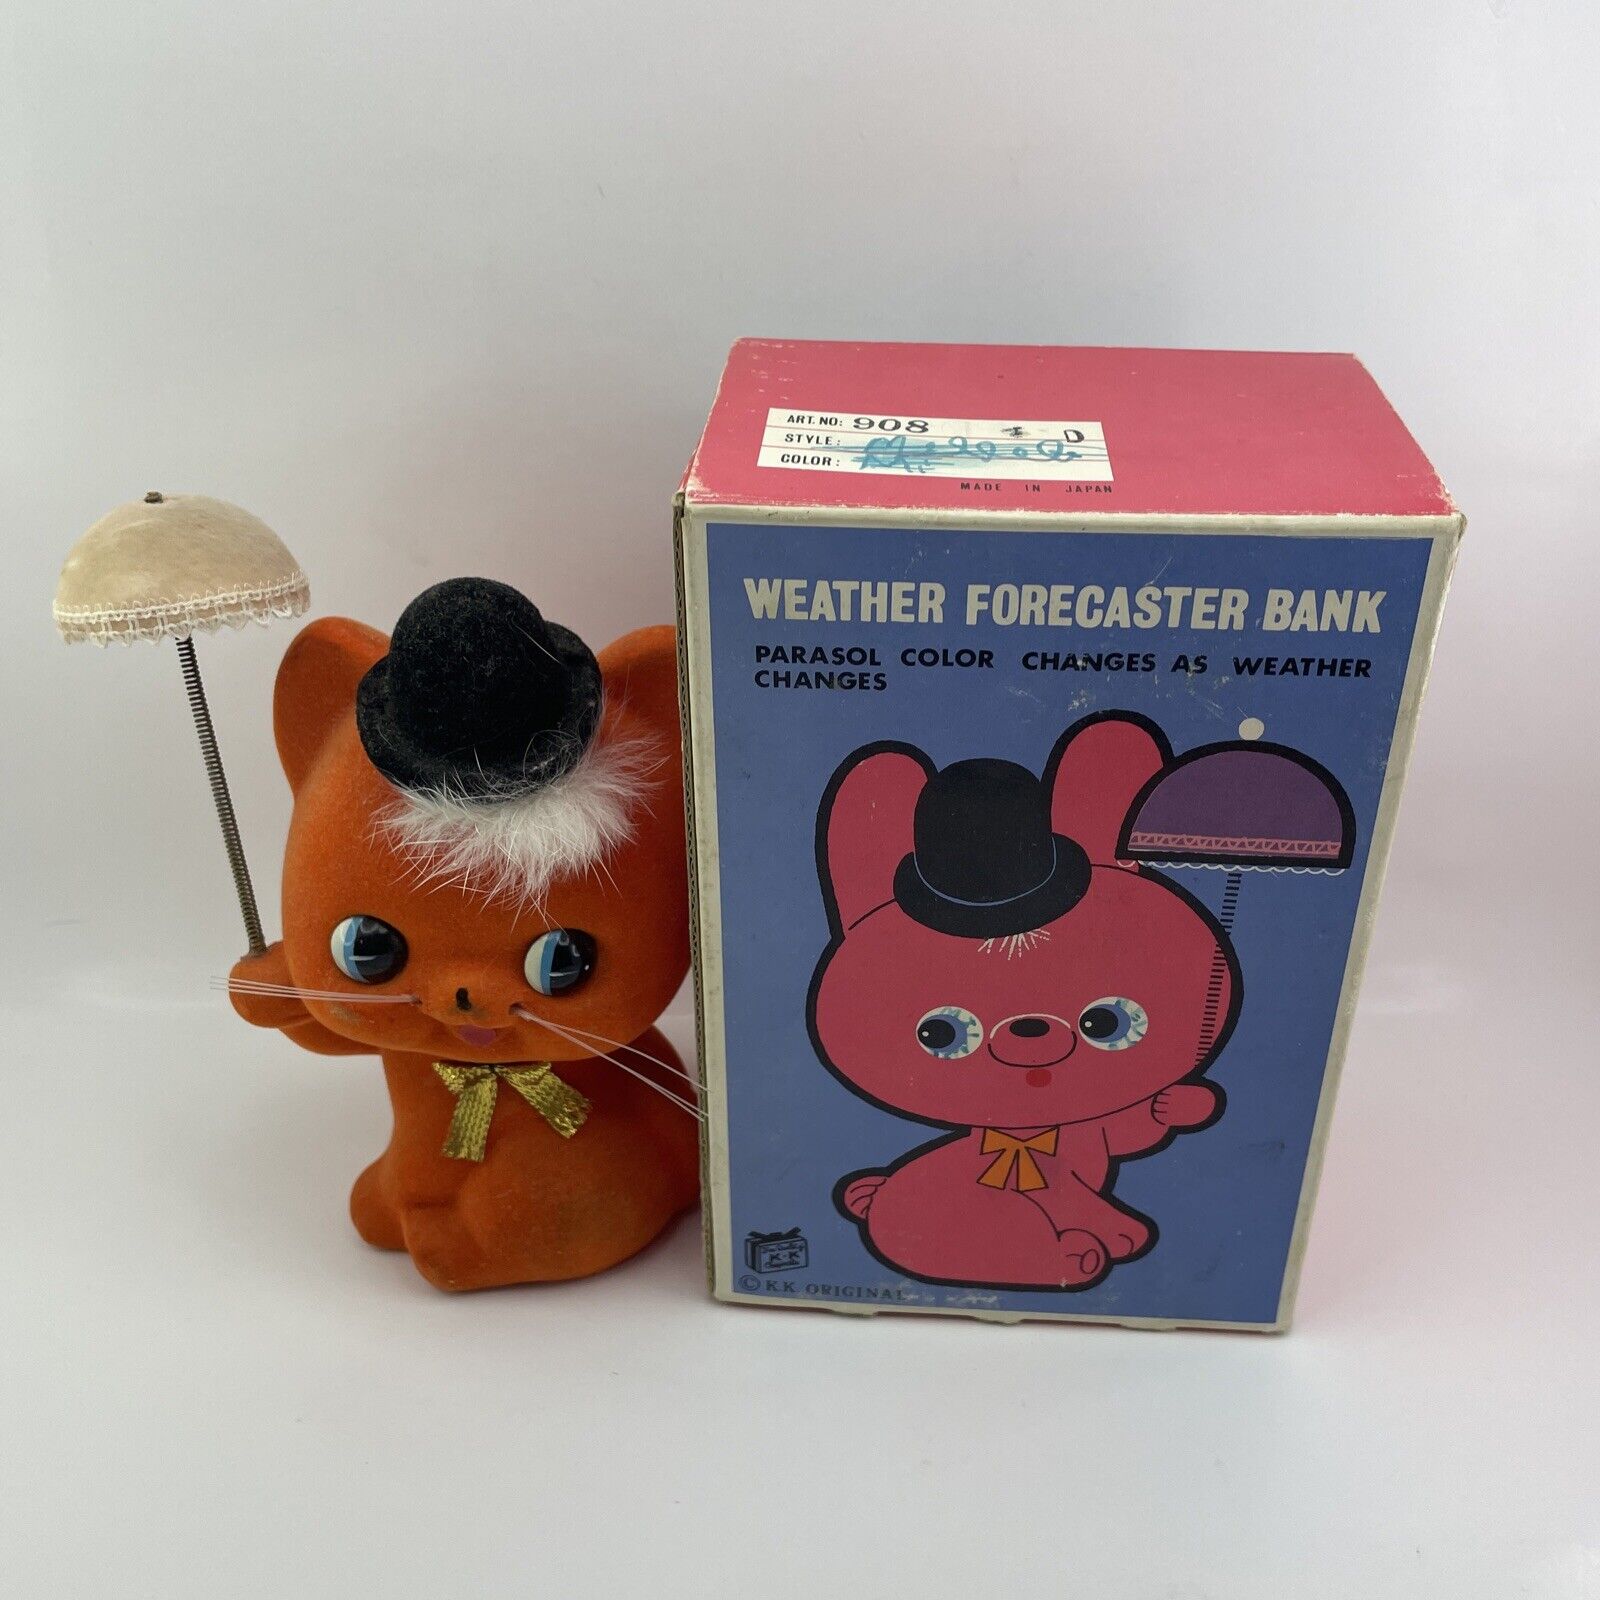 Vintage Japanese Ceramic Flocked Orange Weather Forecaster Bank (K.K. Original)